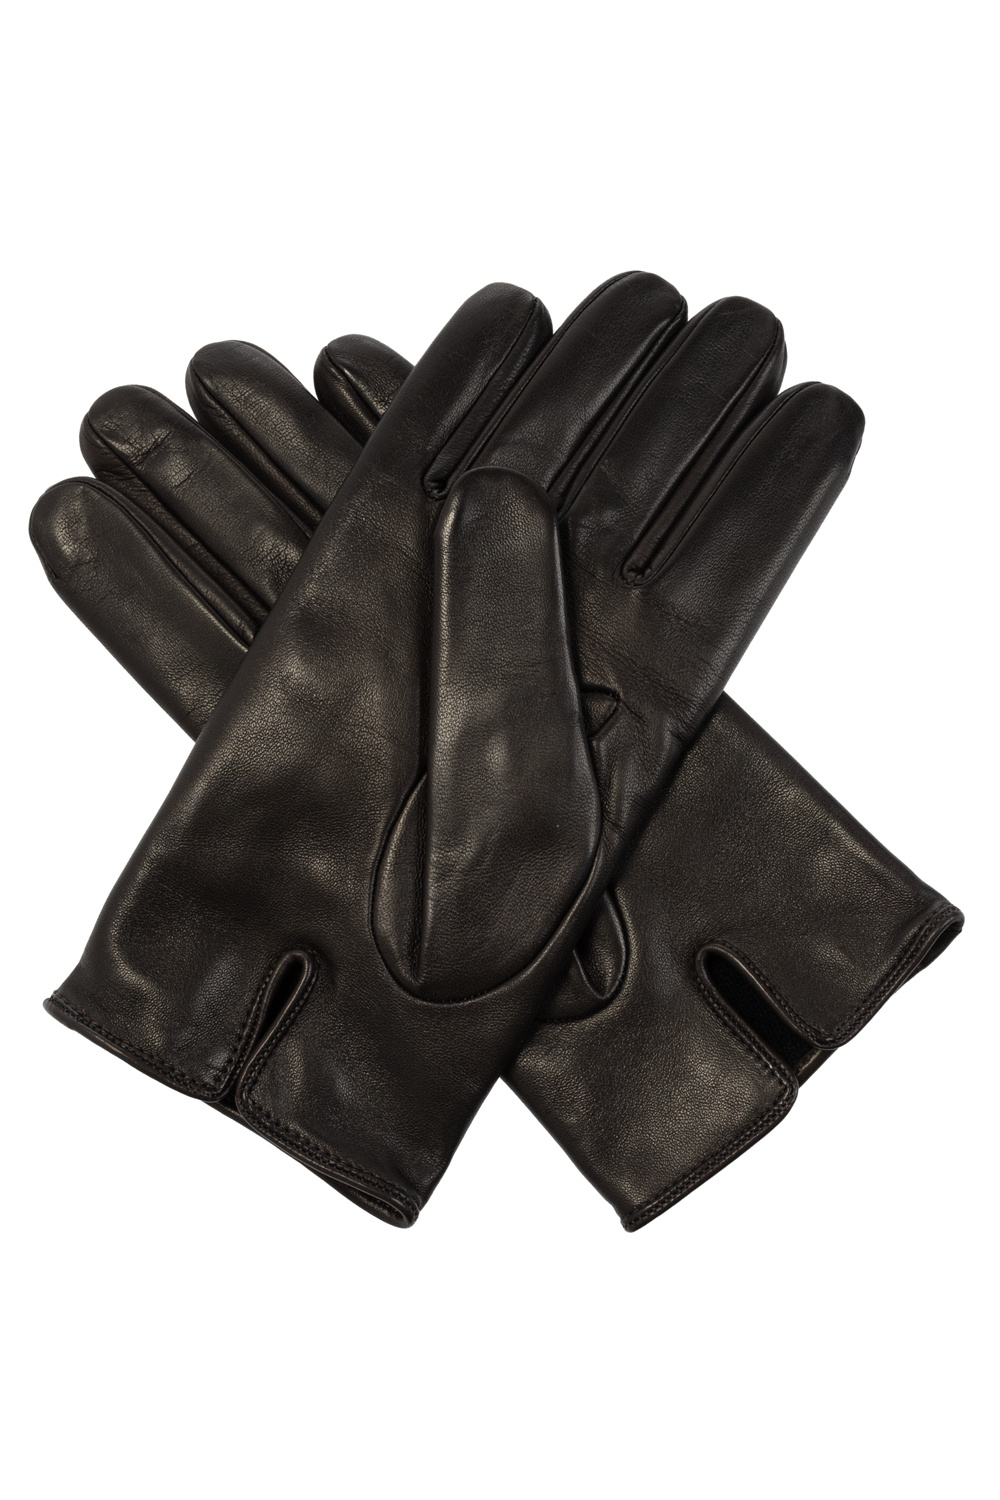 Emporio blk armani Leather gloves